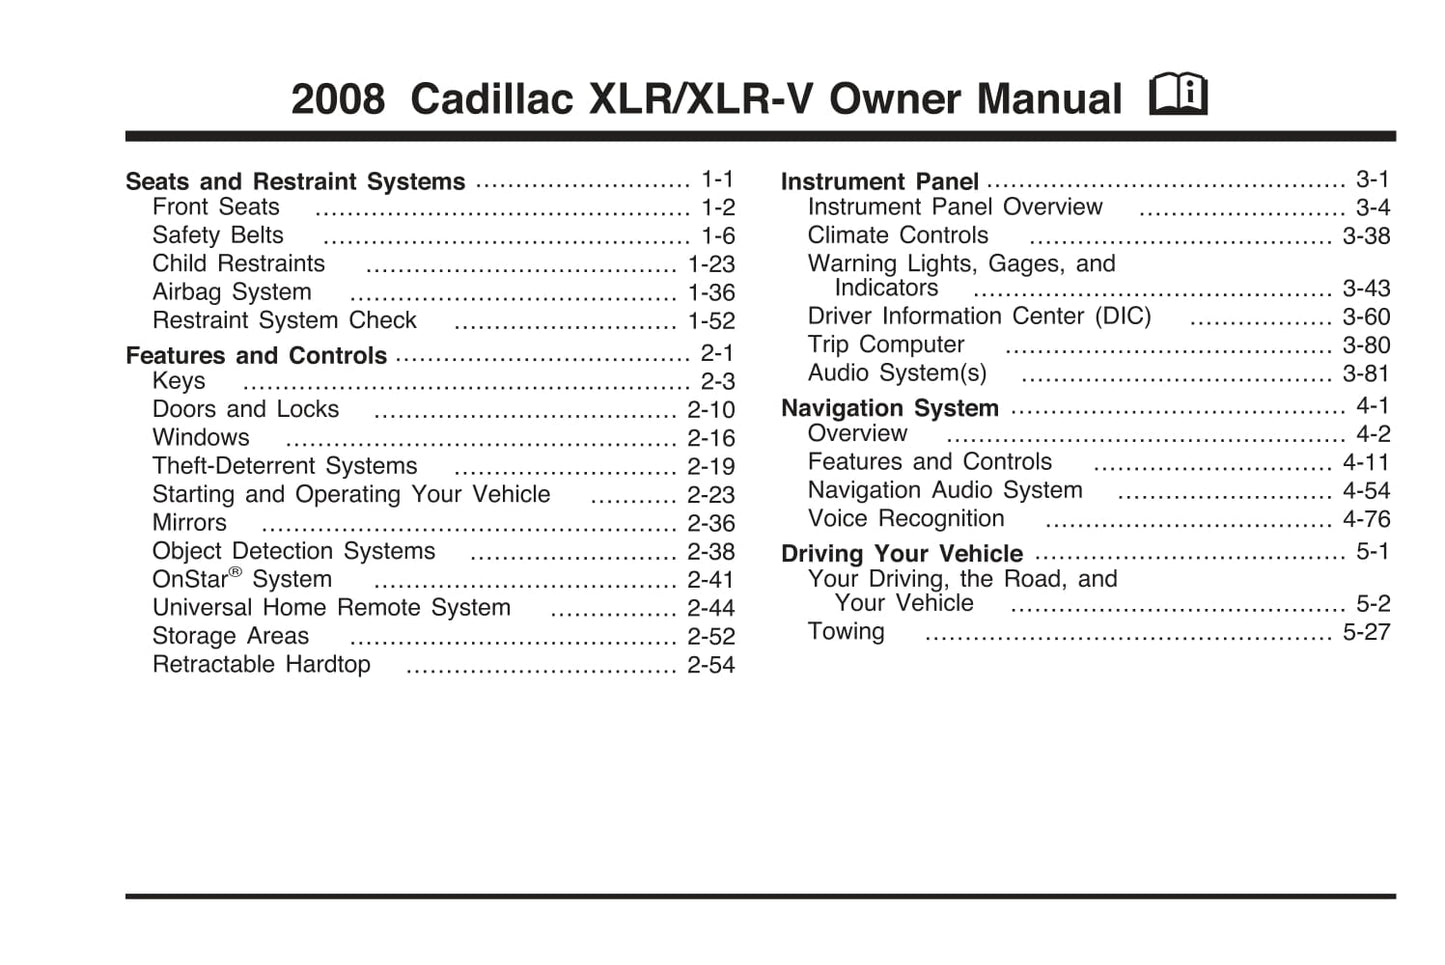 2008 Cadillac XLR/XLR-V Owner's Manual | English